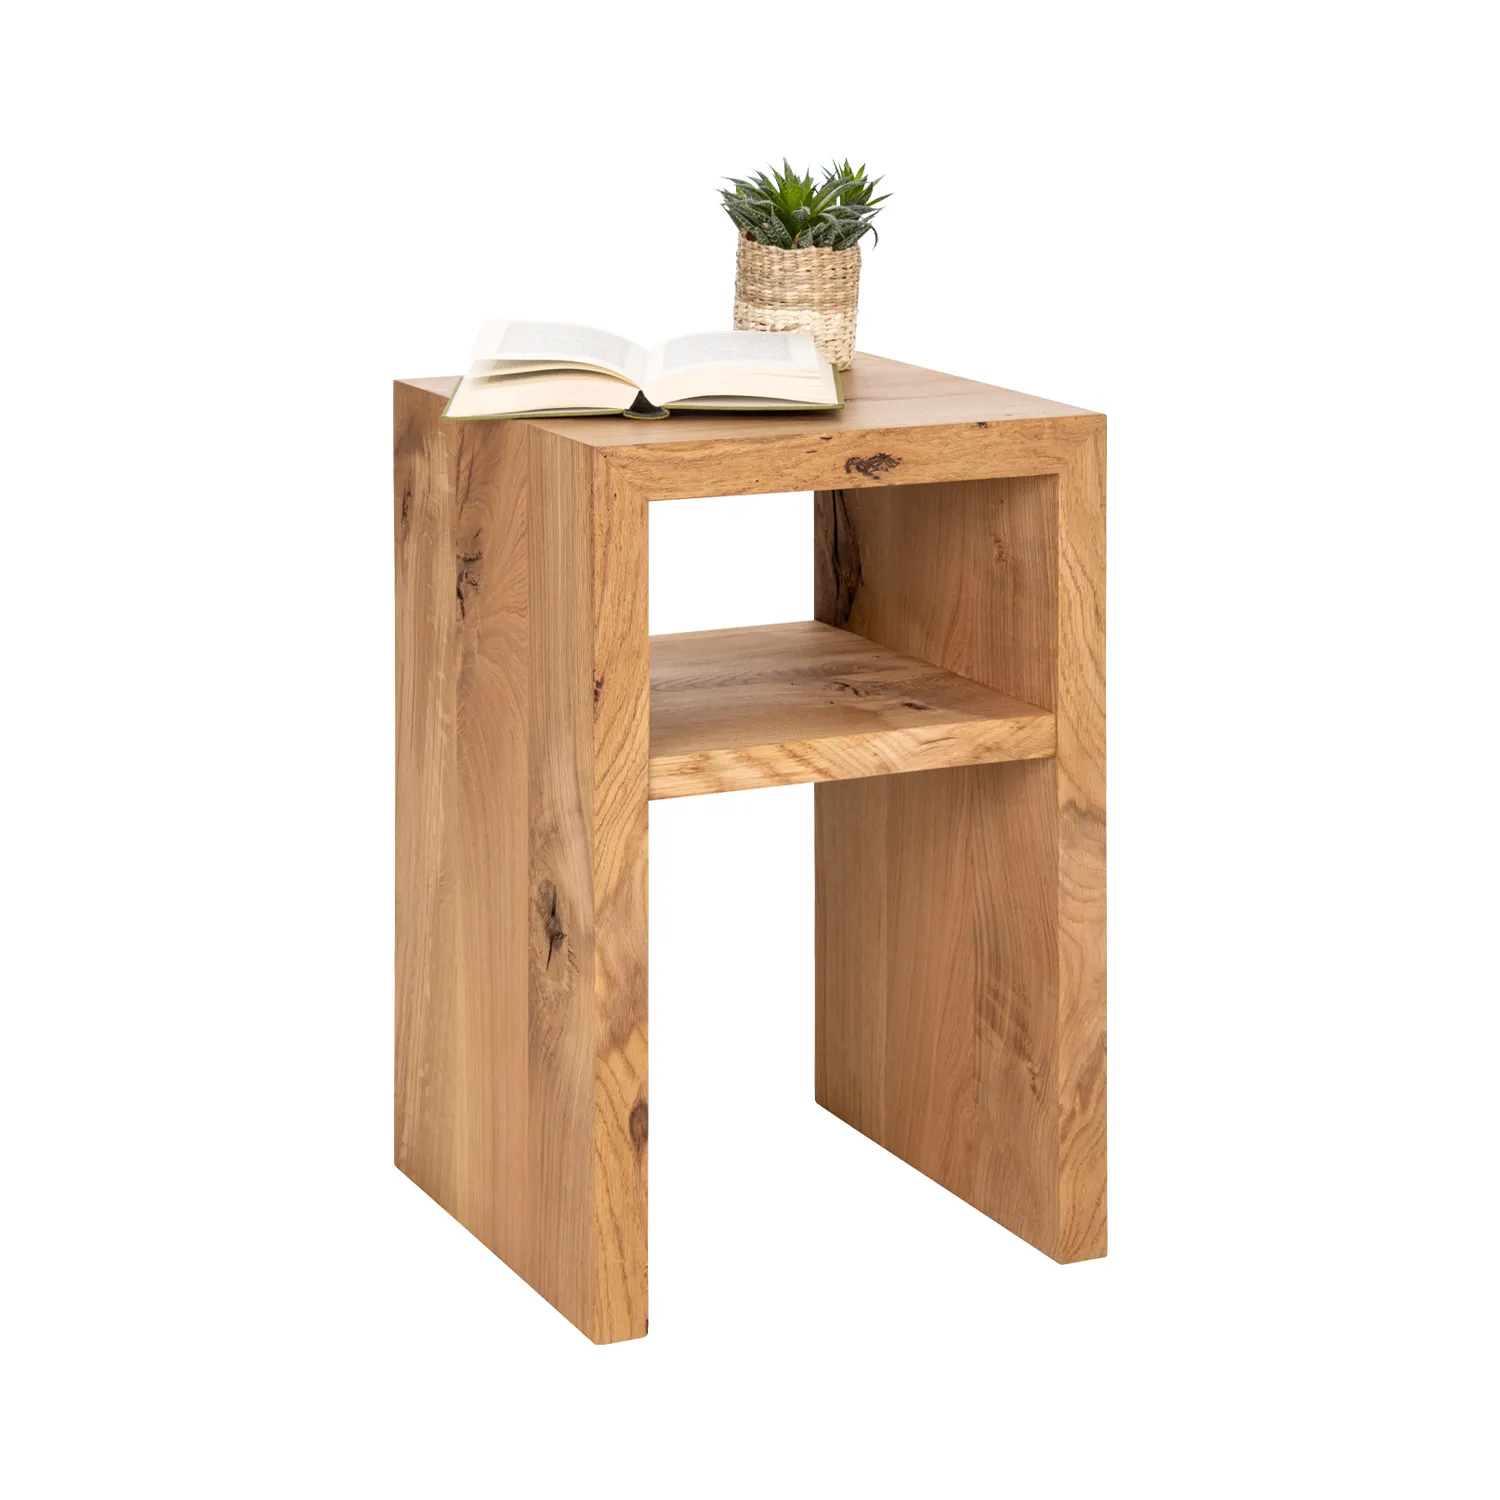 Nachttisch aus Eichenholz mit einem Ablagegefach, darauf Buch und Pflanze